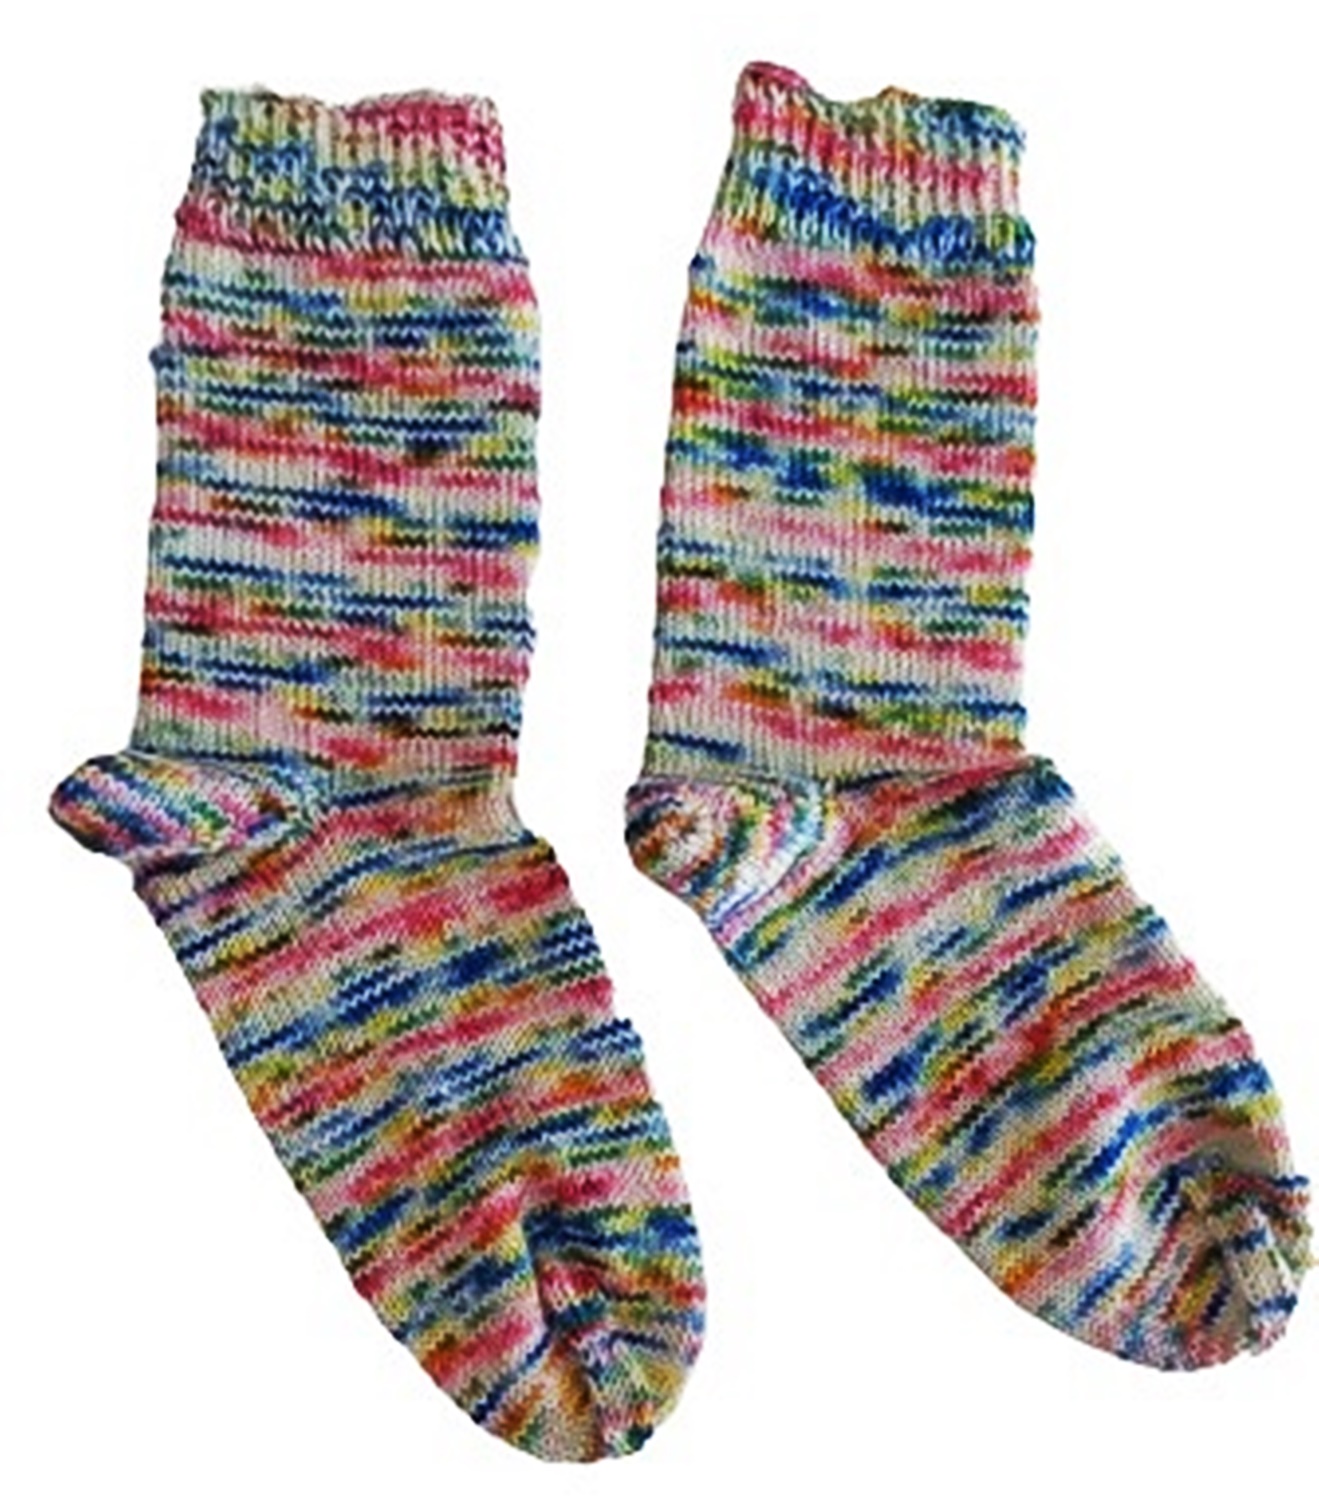 Handgestrickte Socken aus handgefärbter Sockenwolle